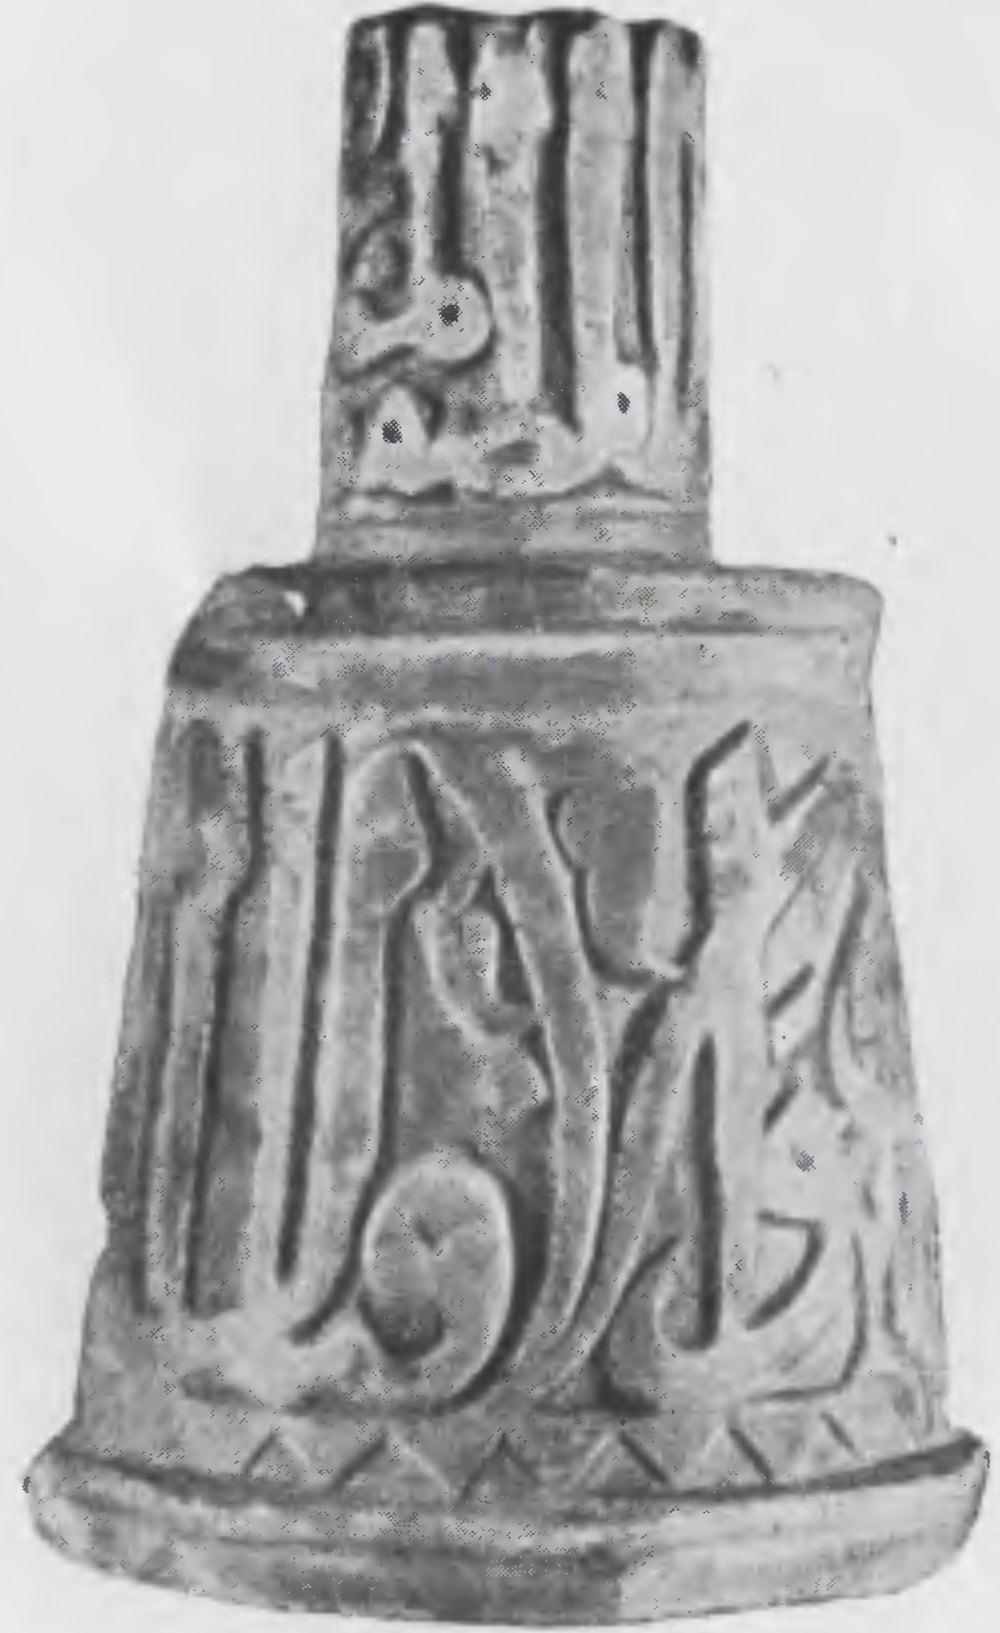 вн Рис. 32. Подсвечник мраморный с арабской надписью. XIV в. Выс. 23.0 см. Эрмитаж